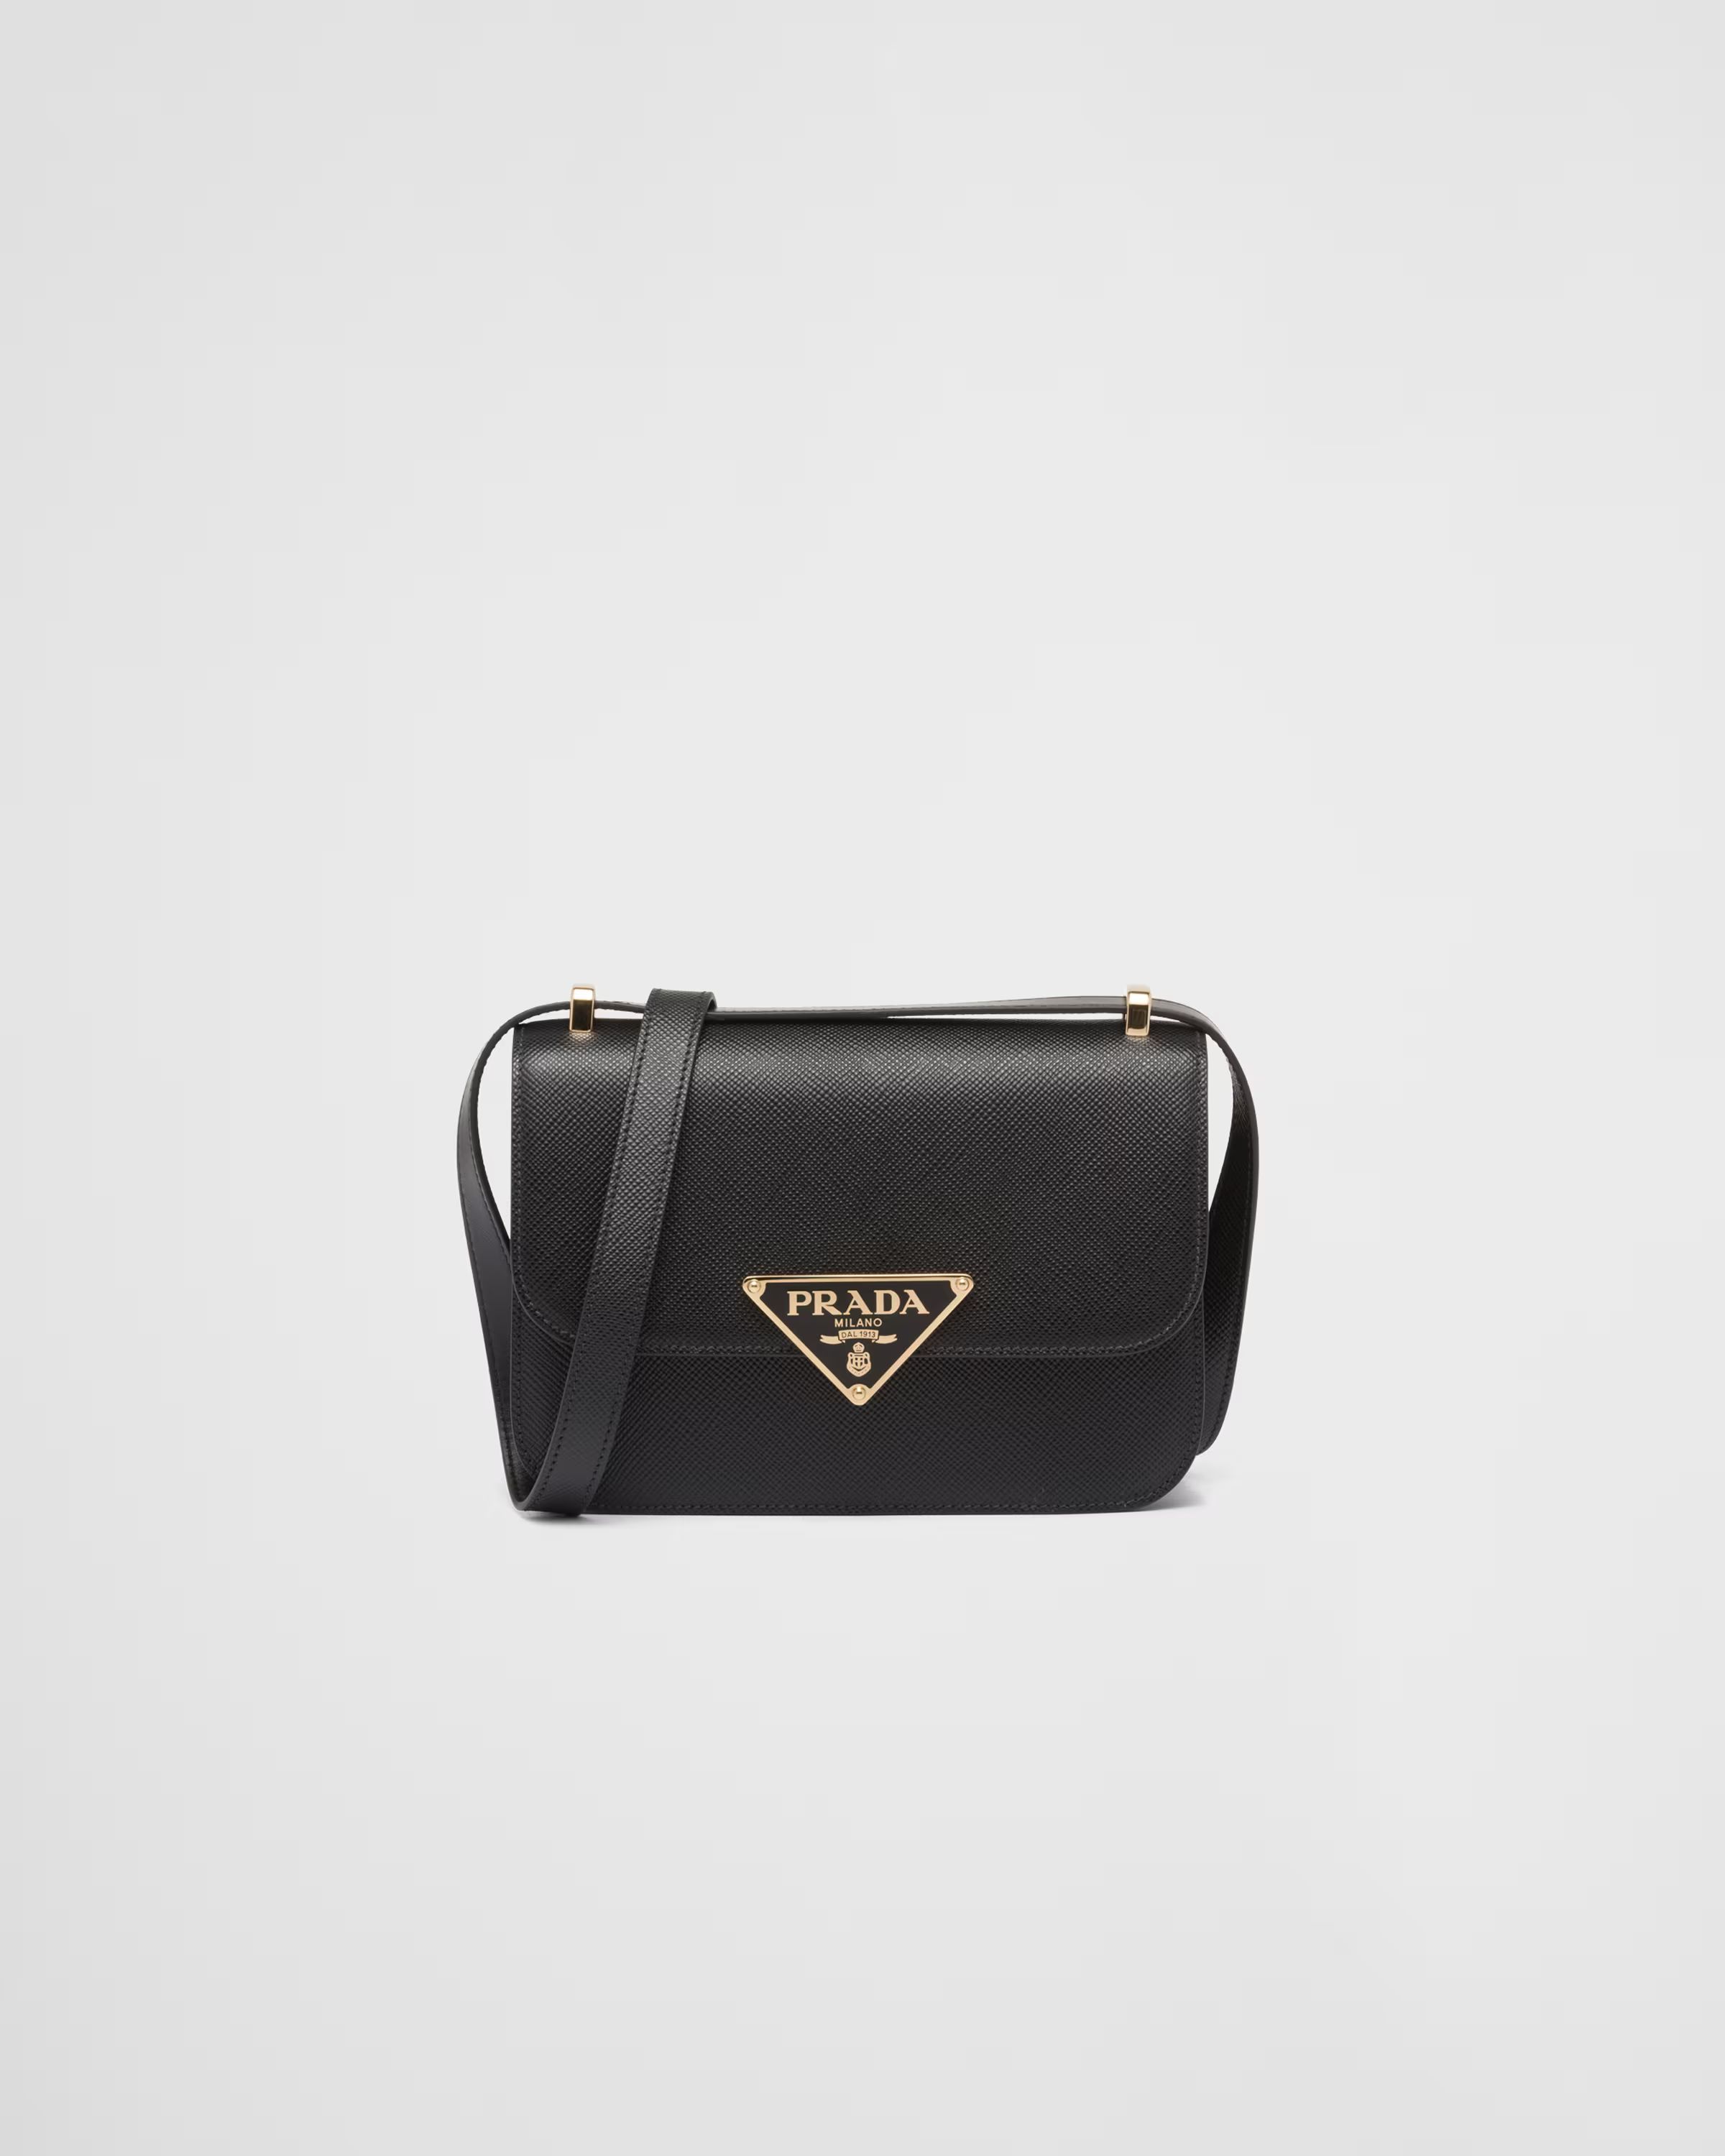 Prada Emblème Saffiano shoulder bag | Prada Spa US